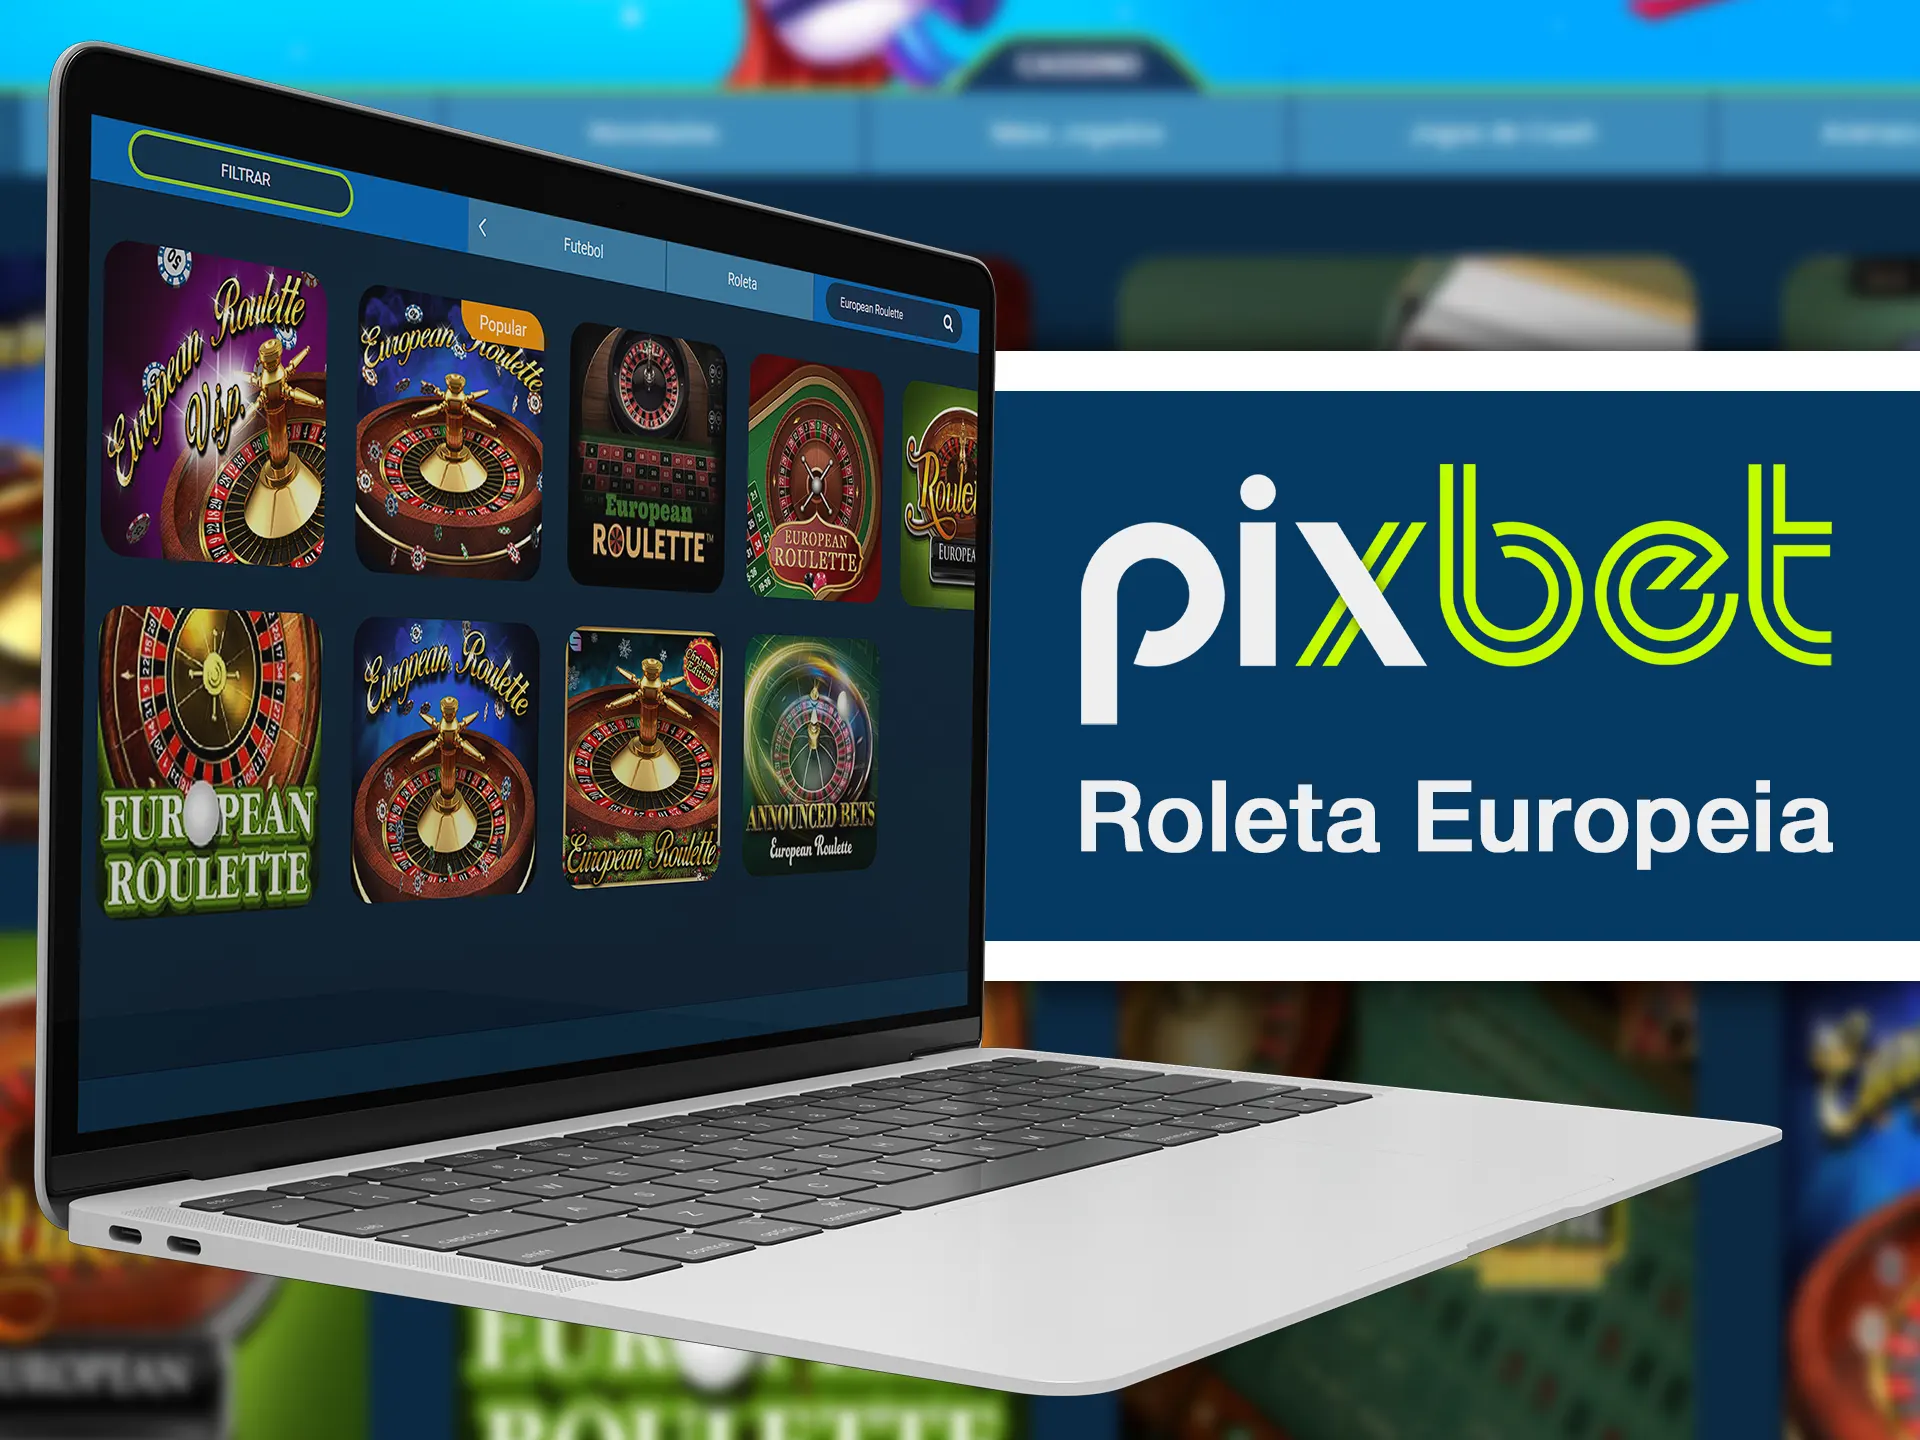 A roleta europeia é uma ótima roleta para jogar na Pixbet.